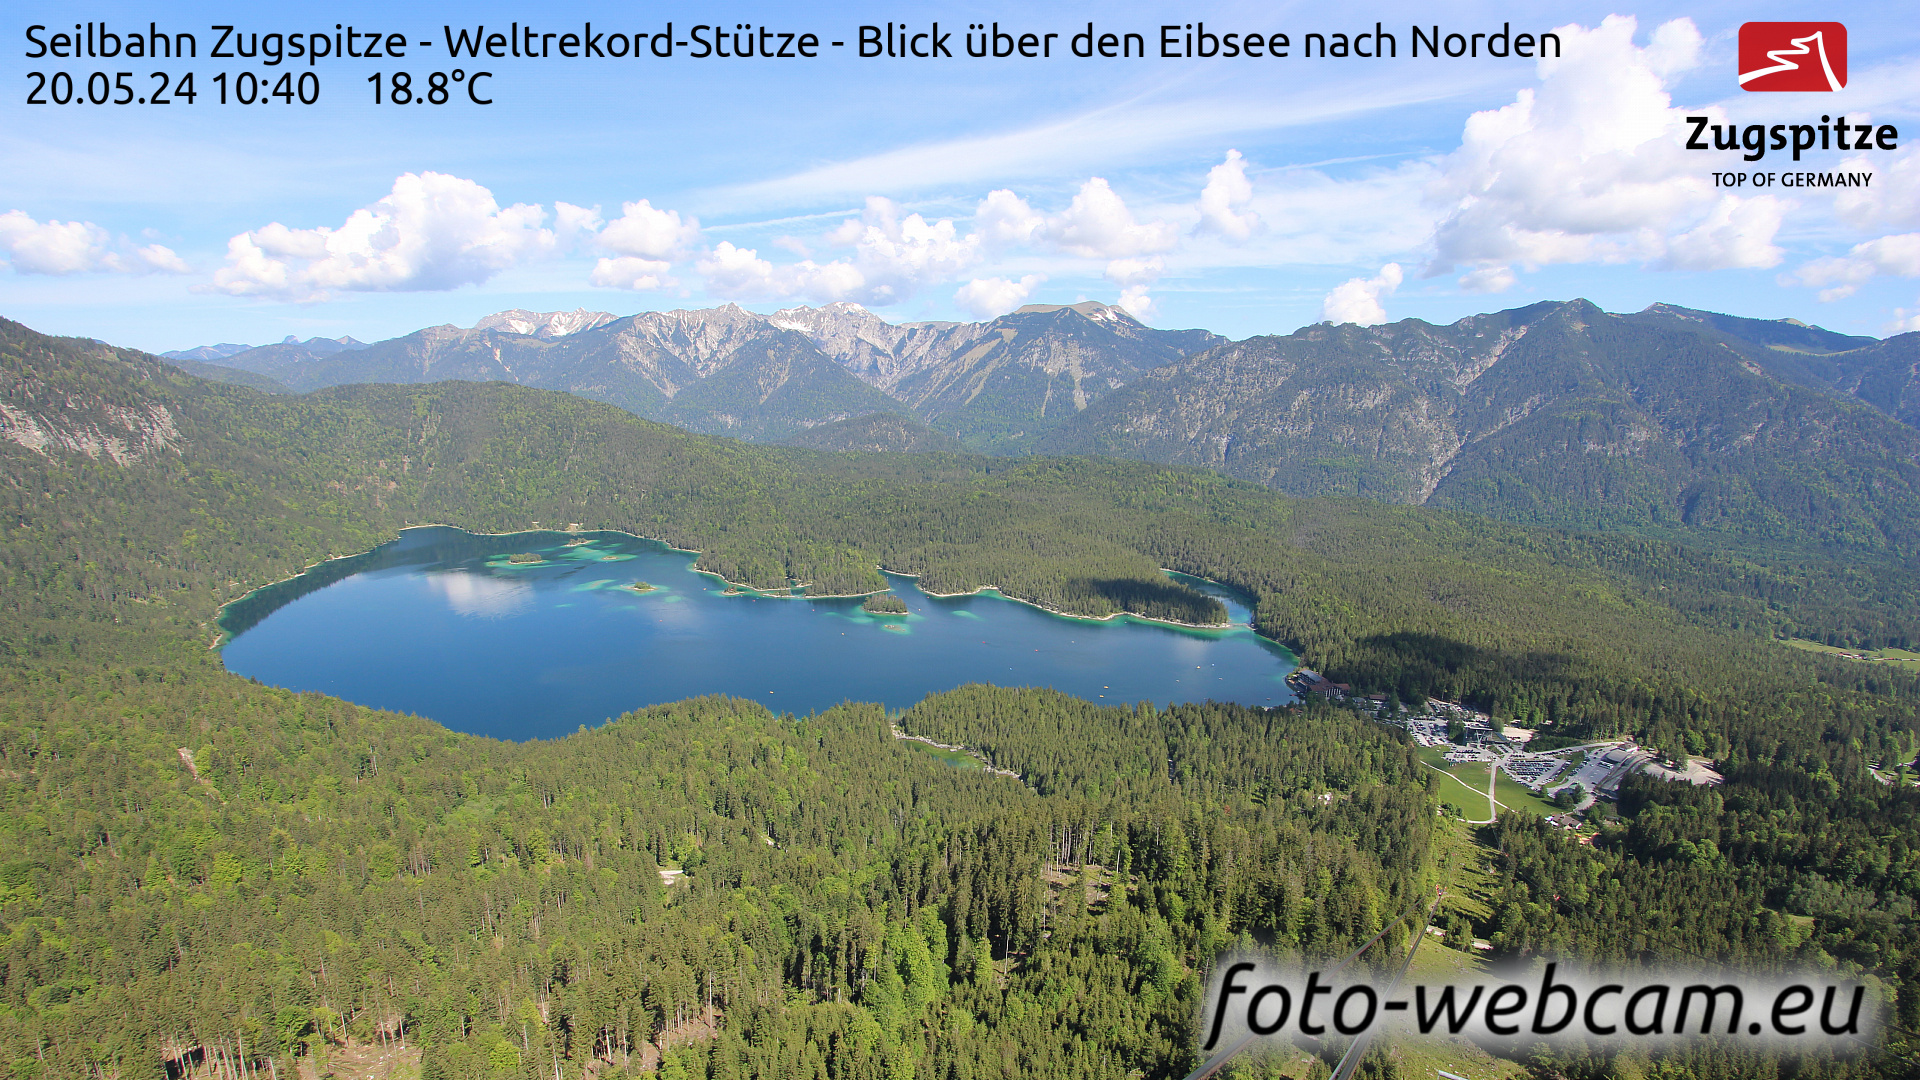 Zugspitze Wed. 10:49